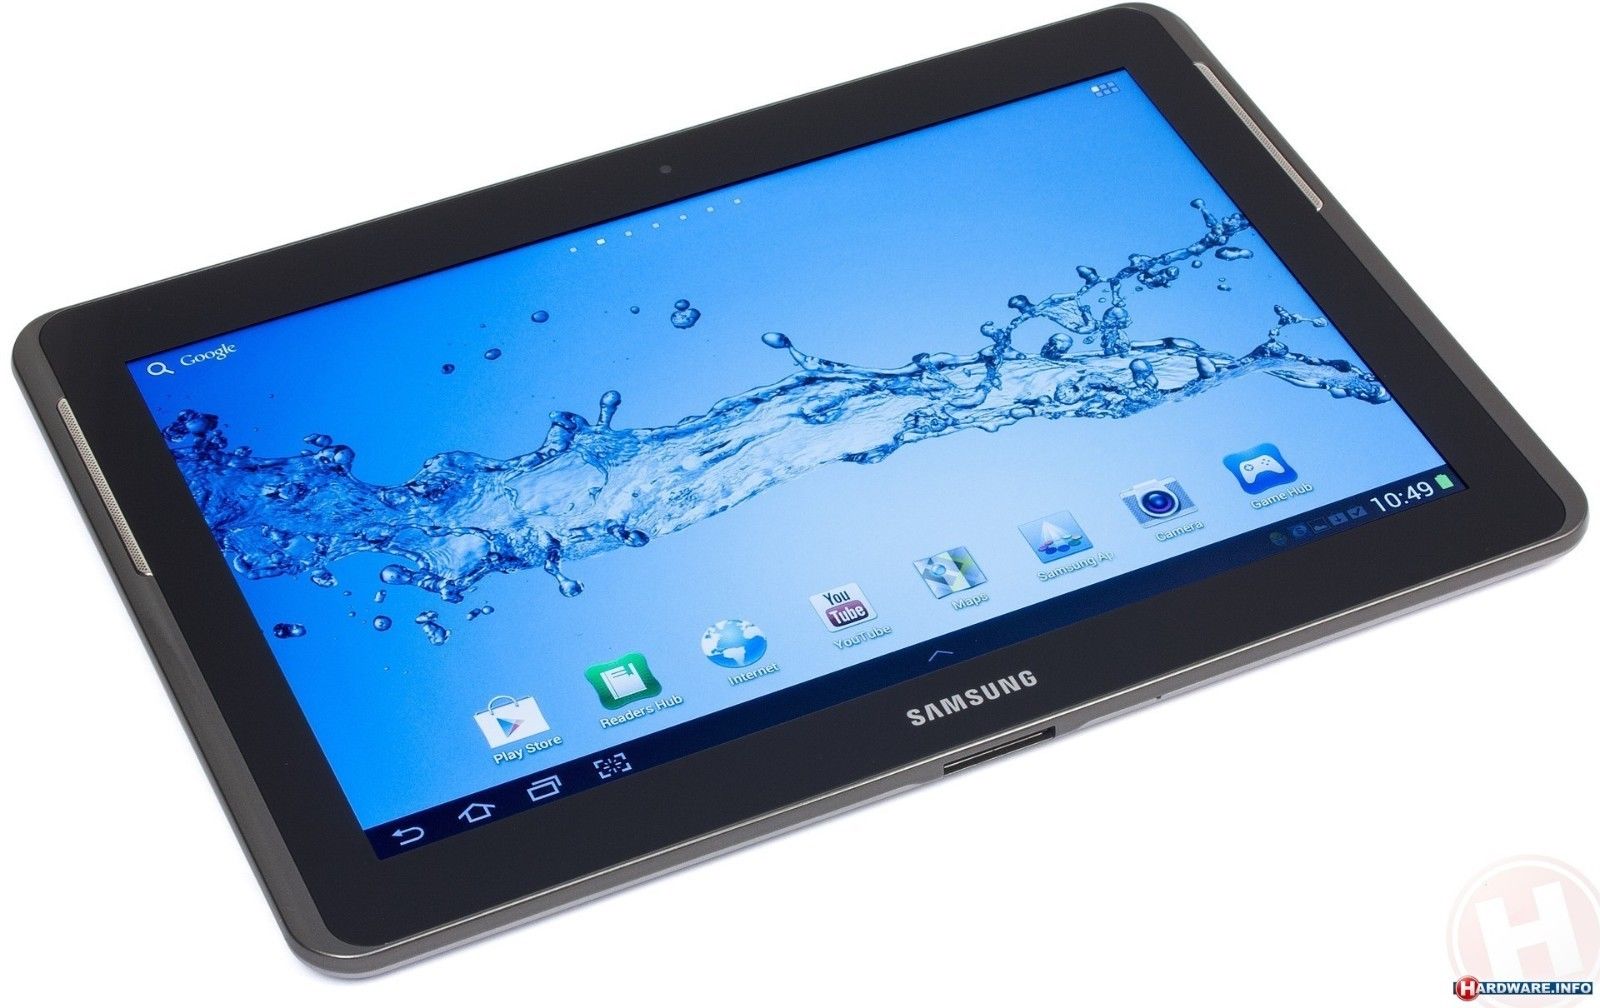 Samsung Galaxy Tab 2 GT-P5113 16GB, Wi-Fi, 10.1in - Silver